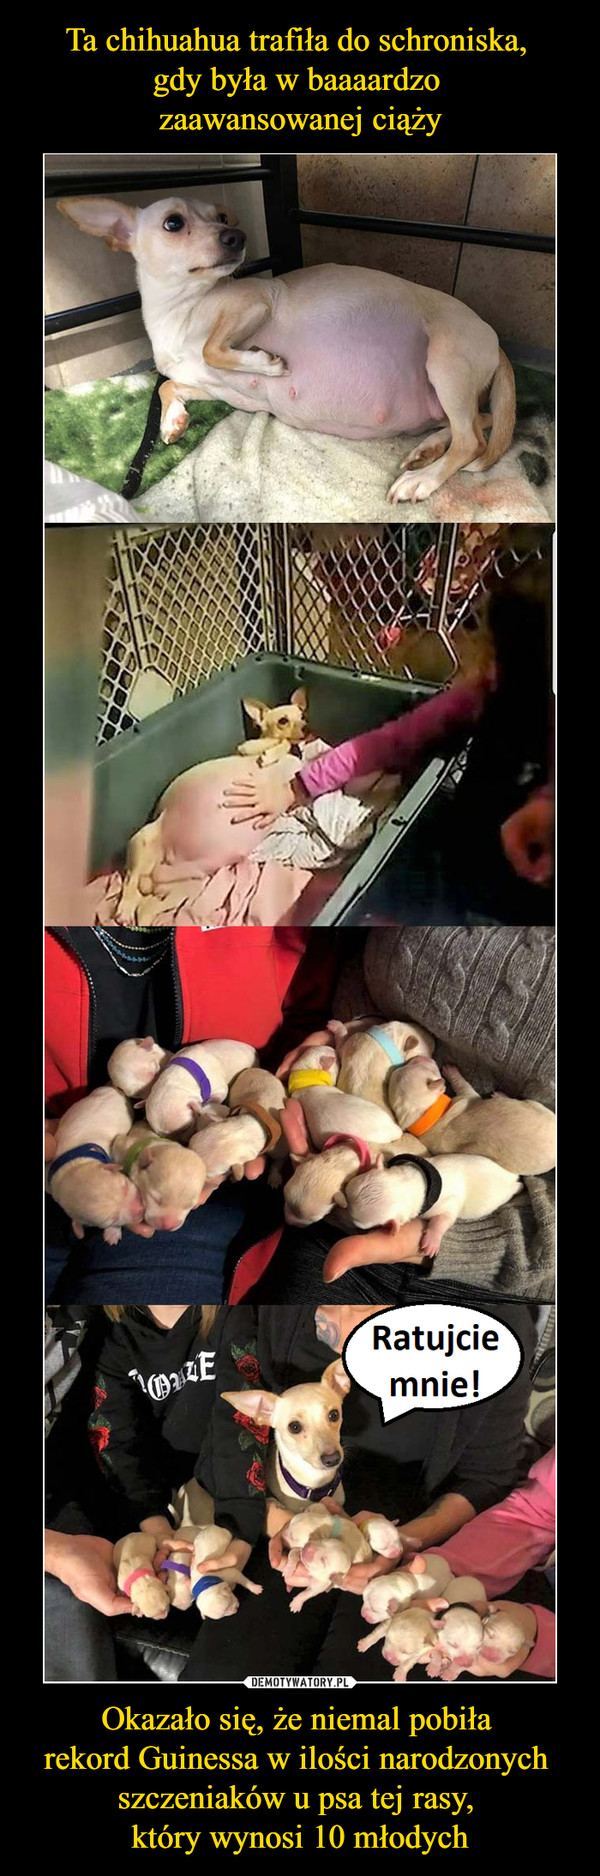 Ta chihuahua trafiła do schroniska, 
gdy była w baaaardzo 
zaawansowanej ciąży Okazało się, że niemal pobiła 
rekord Guinessa w ilości narodzonych 
szczeniaków u psa tej rasy, 
który wynosi 10 młodych